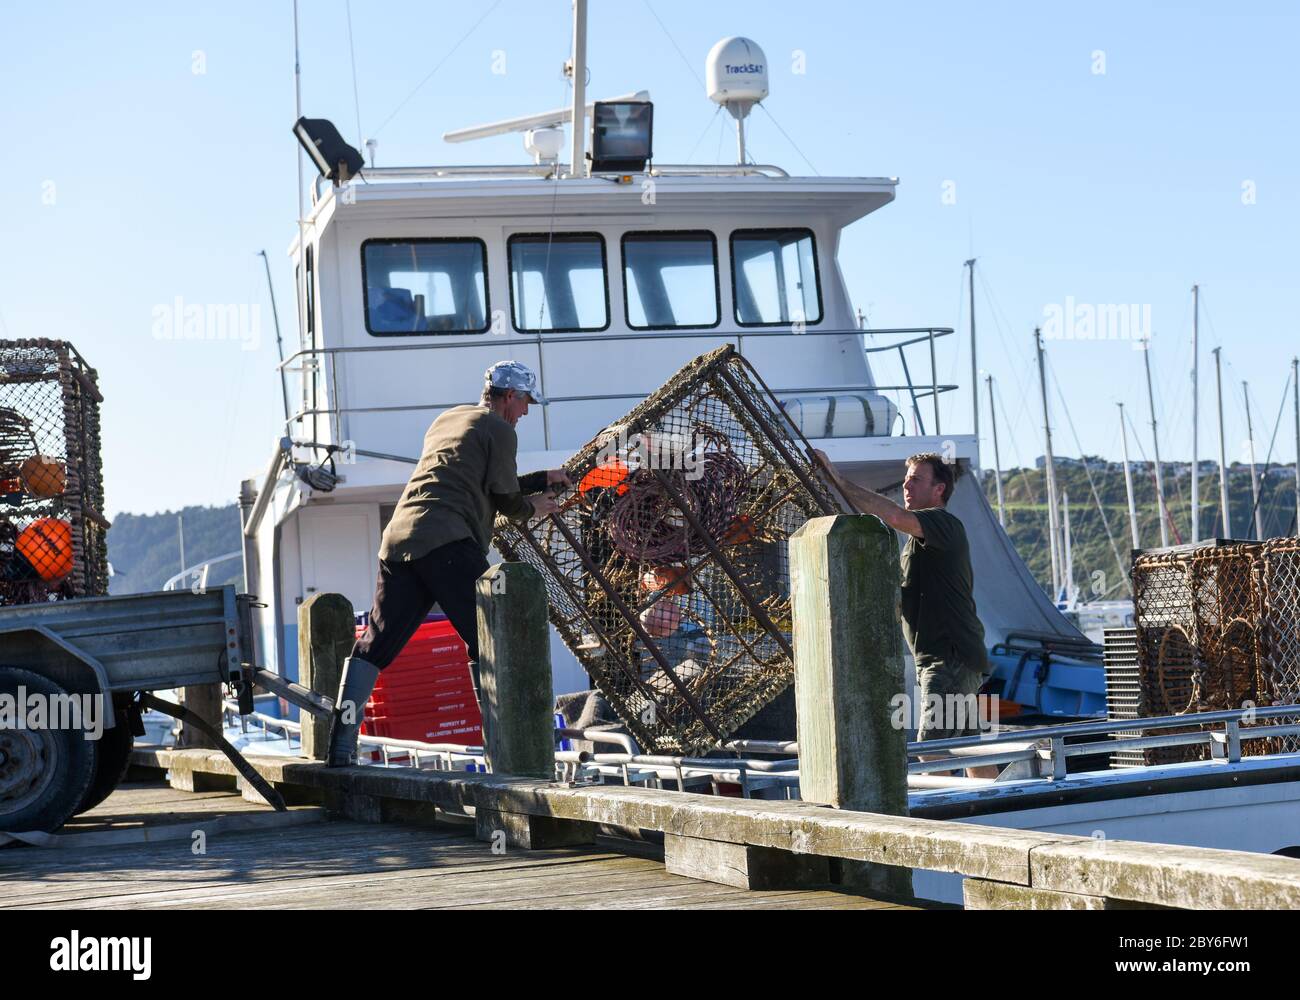 Wellington, Nouvelle-Zélande. 9 juin 2020. Les pêcheurs font des préparatifs à Wellington, en Nouvelle-Zélande, le 9 juin 2020. Le Ministère de la santé n'a signalé aucun cas de COVID-19 en Nouvelle-Zélande mardi, le premier jour d'alerte épidémique de niveau 1, 18 jours depuis que le dernier nouveau cas a été signalé dans le pays. Crédit: Guo Lei/Xinhua/Alay Live News Banque D'Images